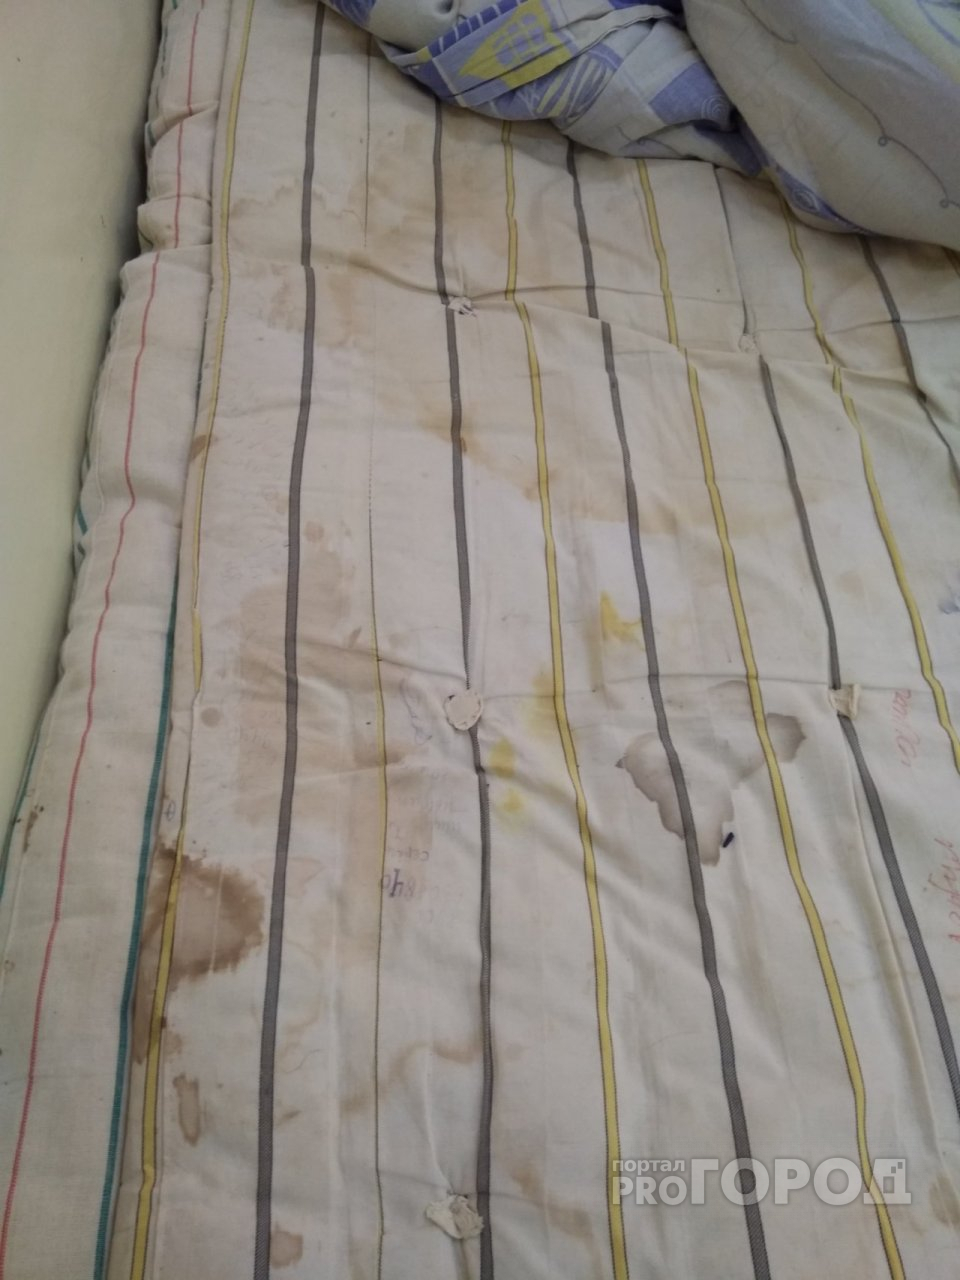 Грязь под кроватями и вековые матрацы: ярославцев ужаснули фото из детской больницы